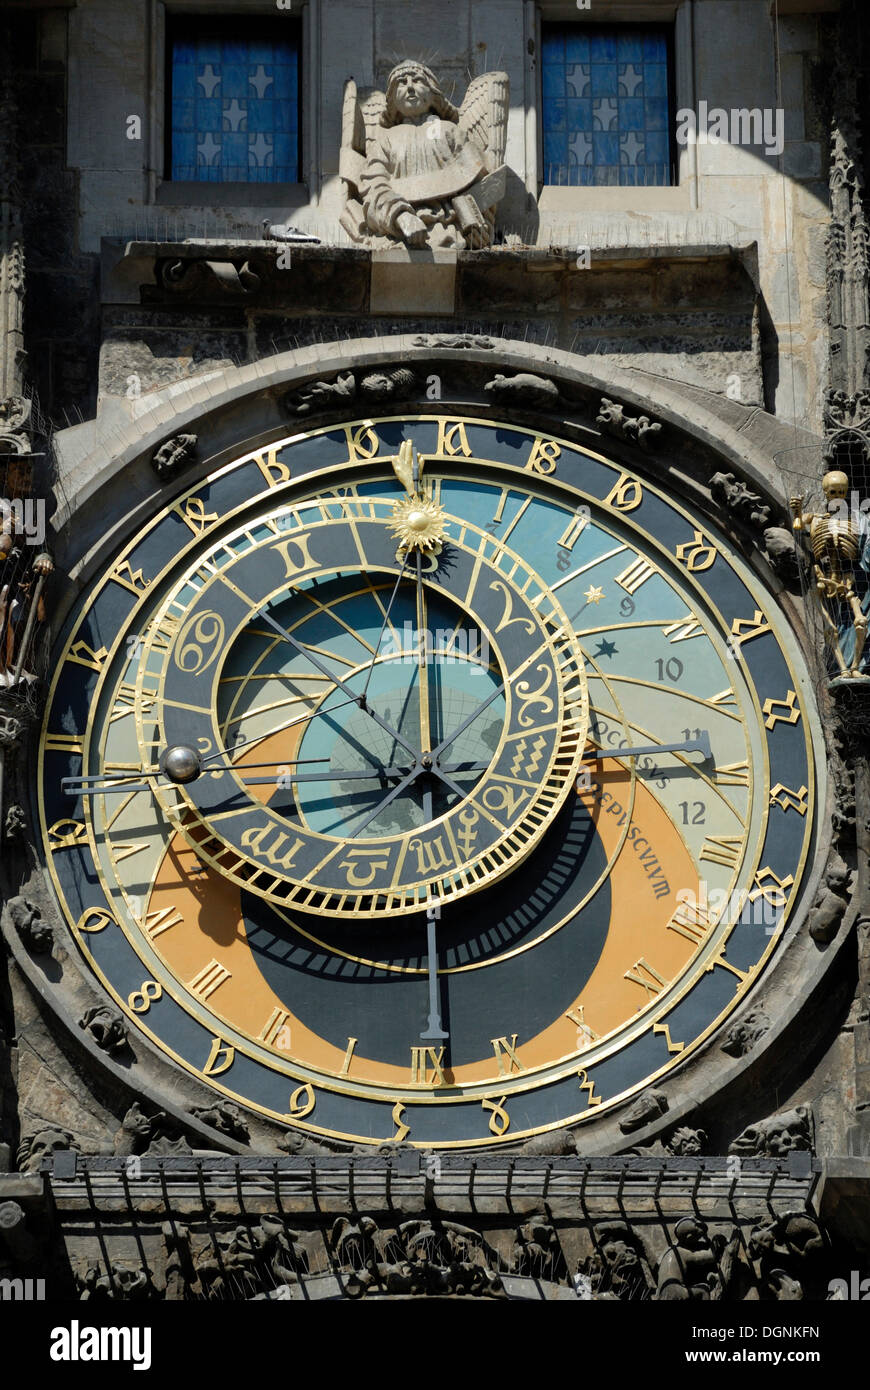 Astronomische Uhr am Altstädter Rathaus, Prag, Tschechische Republik, Europa Stockfoto